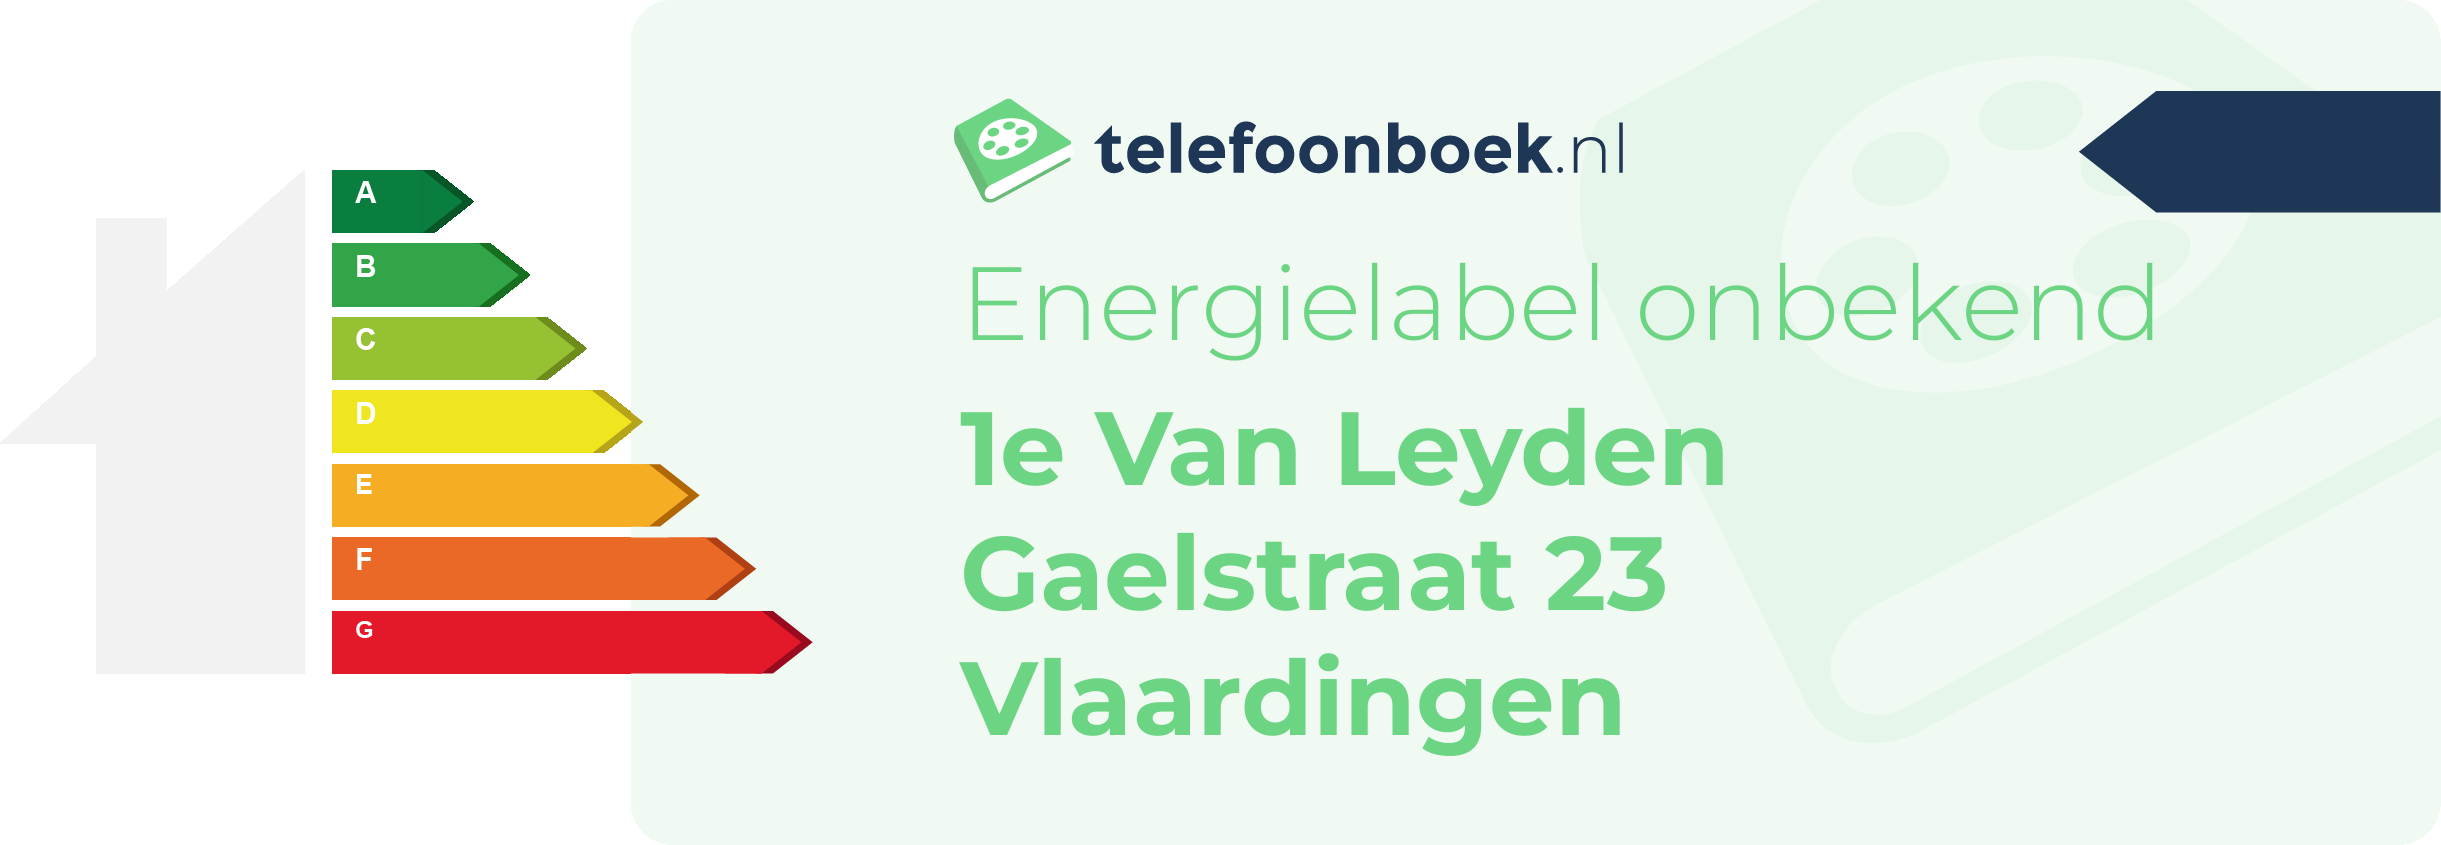 Energielabel 1e Van Leyden Gaelstraat 23 Vlaardingen